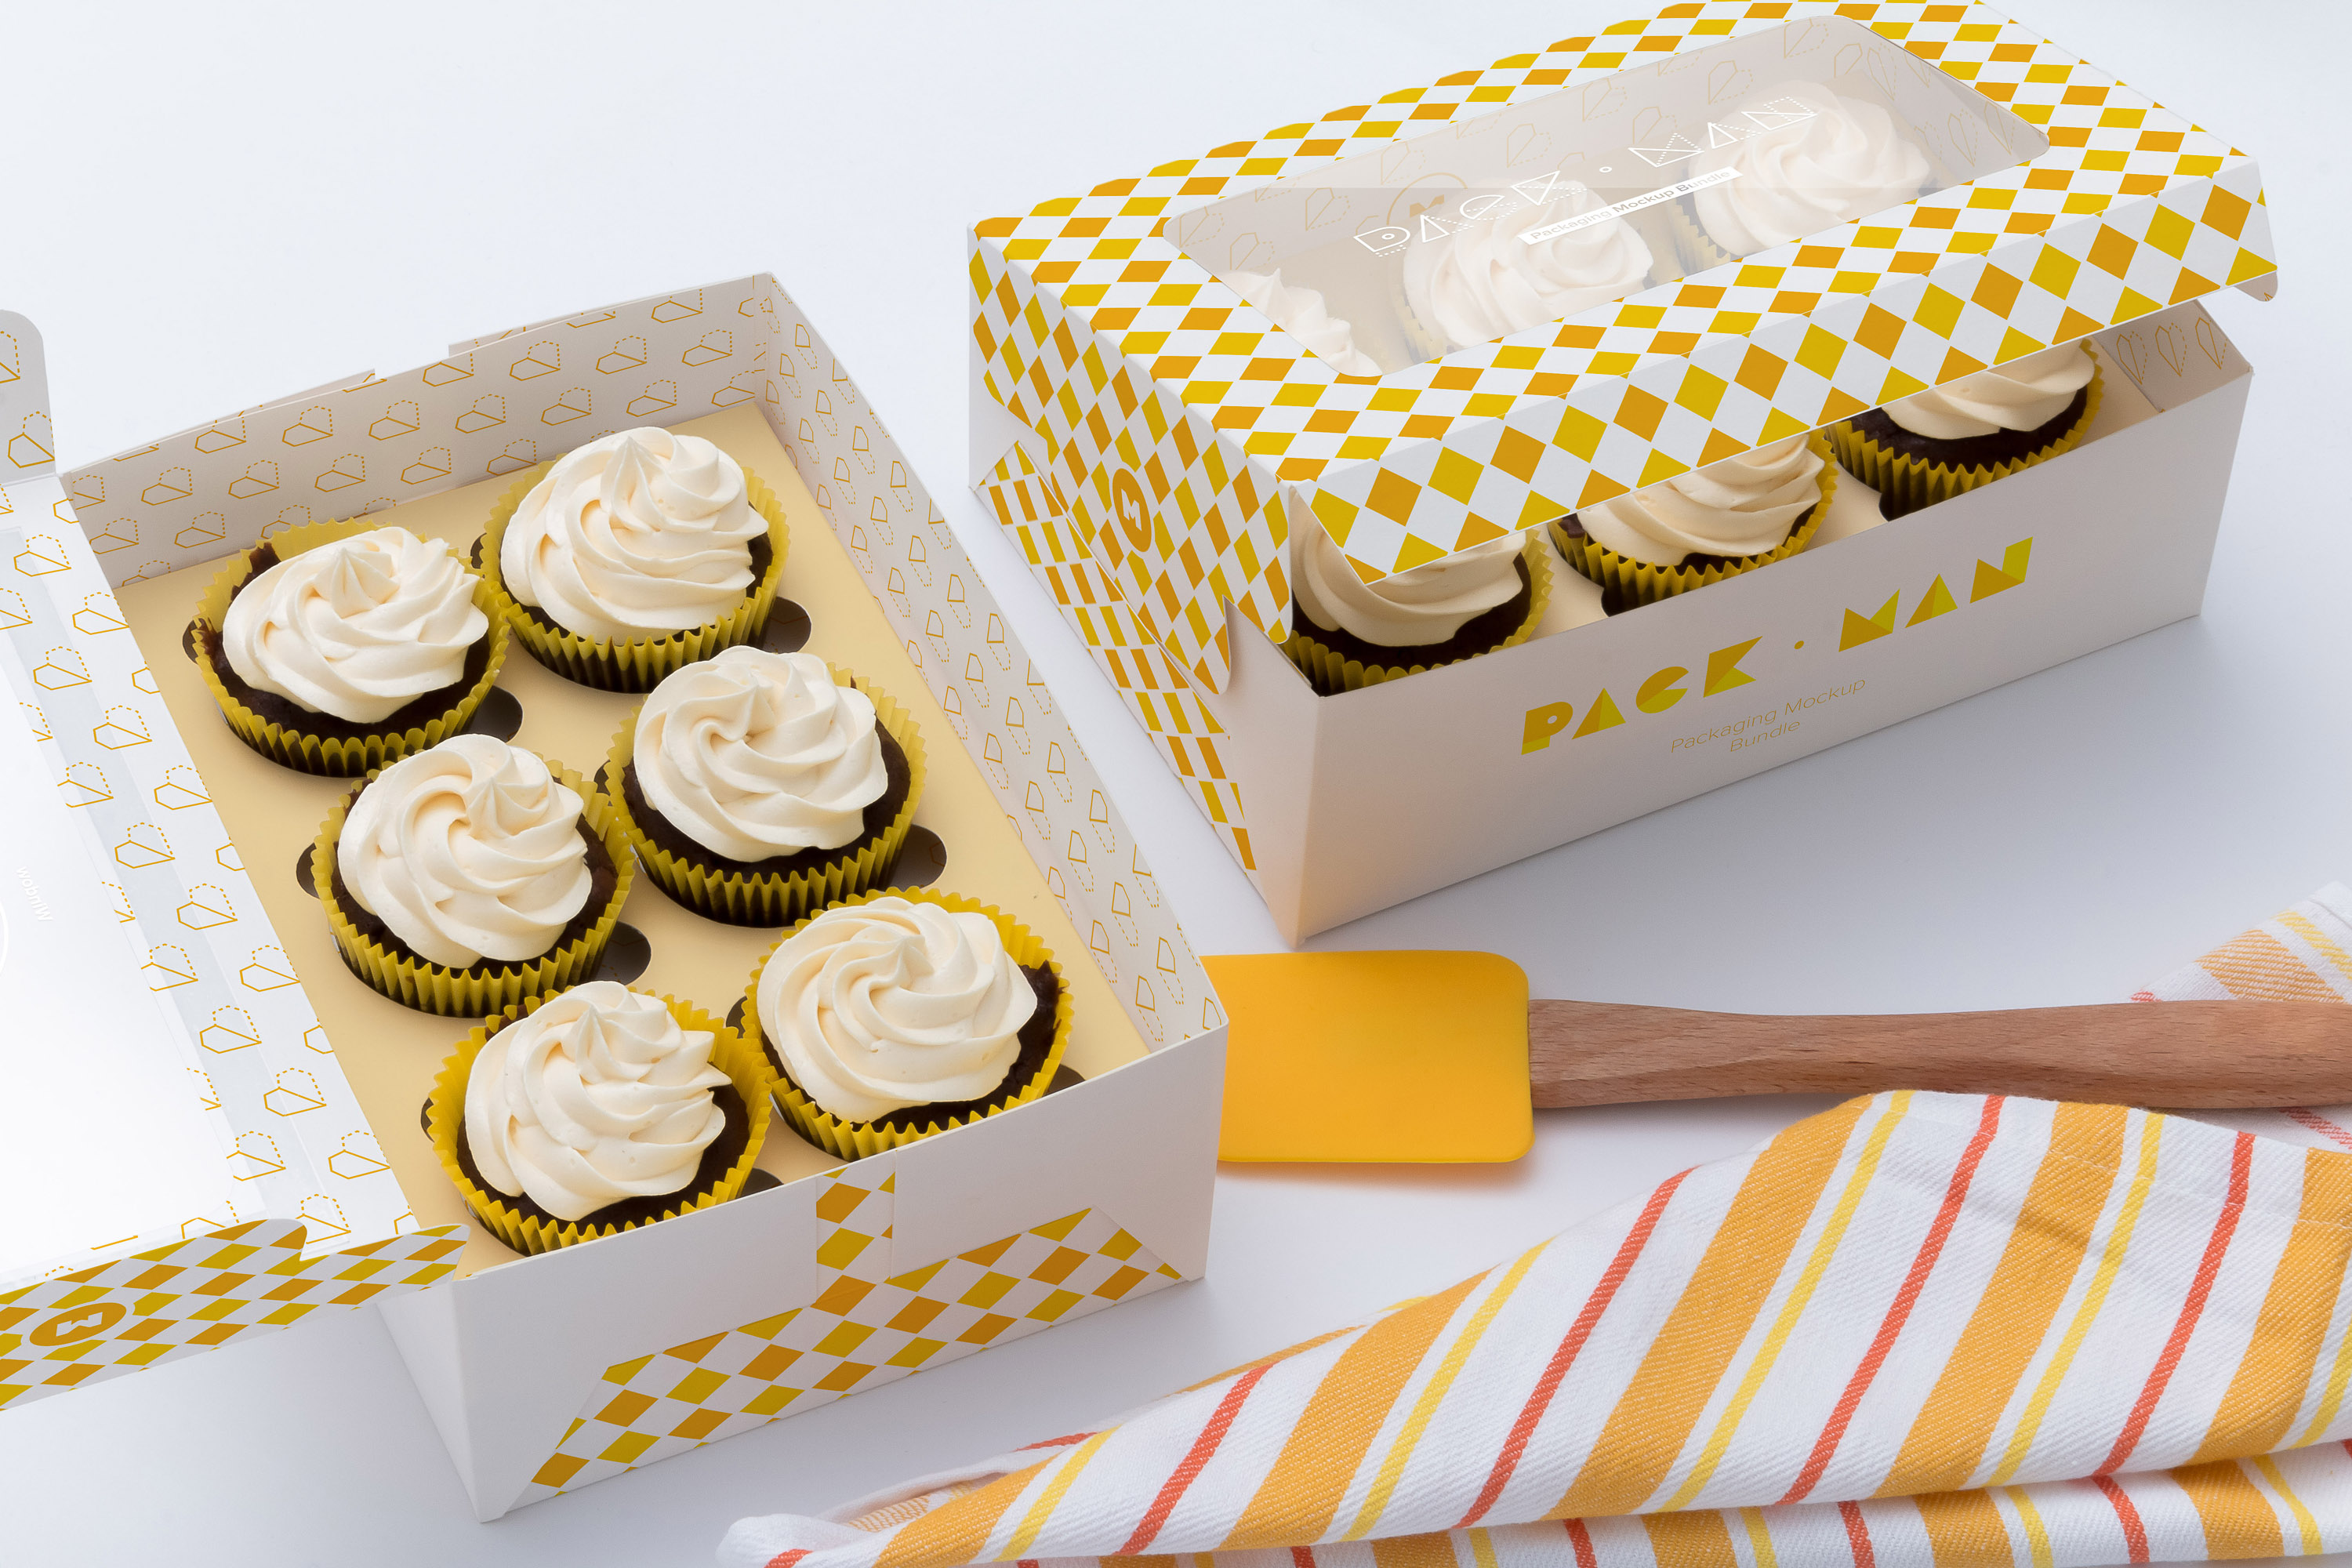 六只装纸杯蛋糕烘焙店包装盒设计效果图样机03 Six Cupcake Box Mockup 03插图